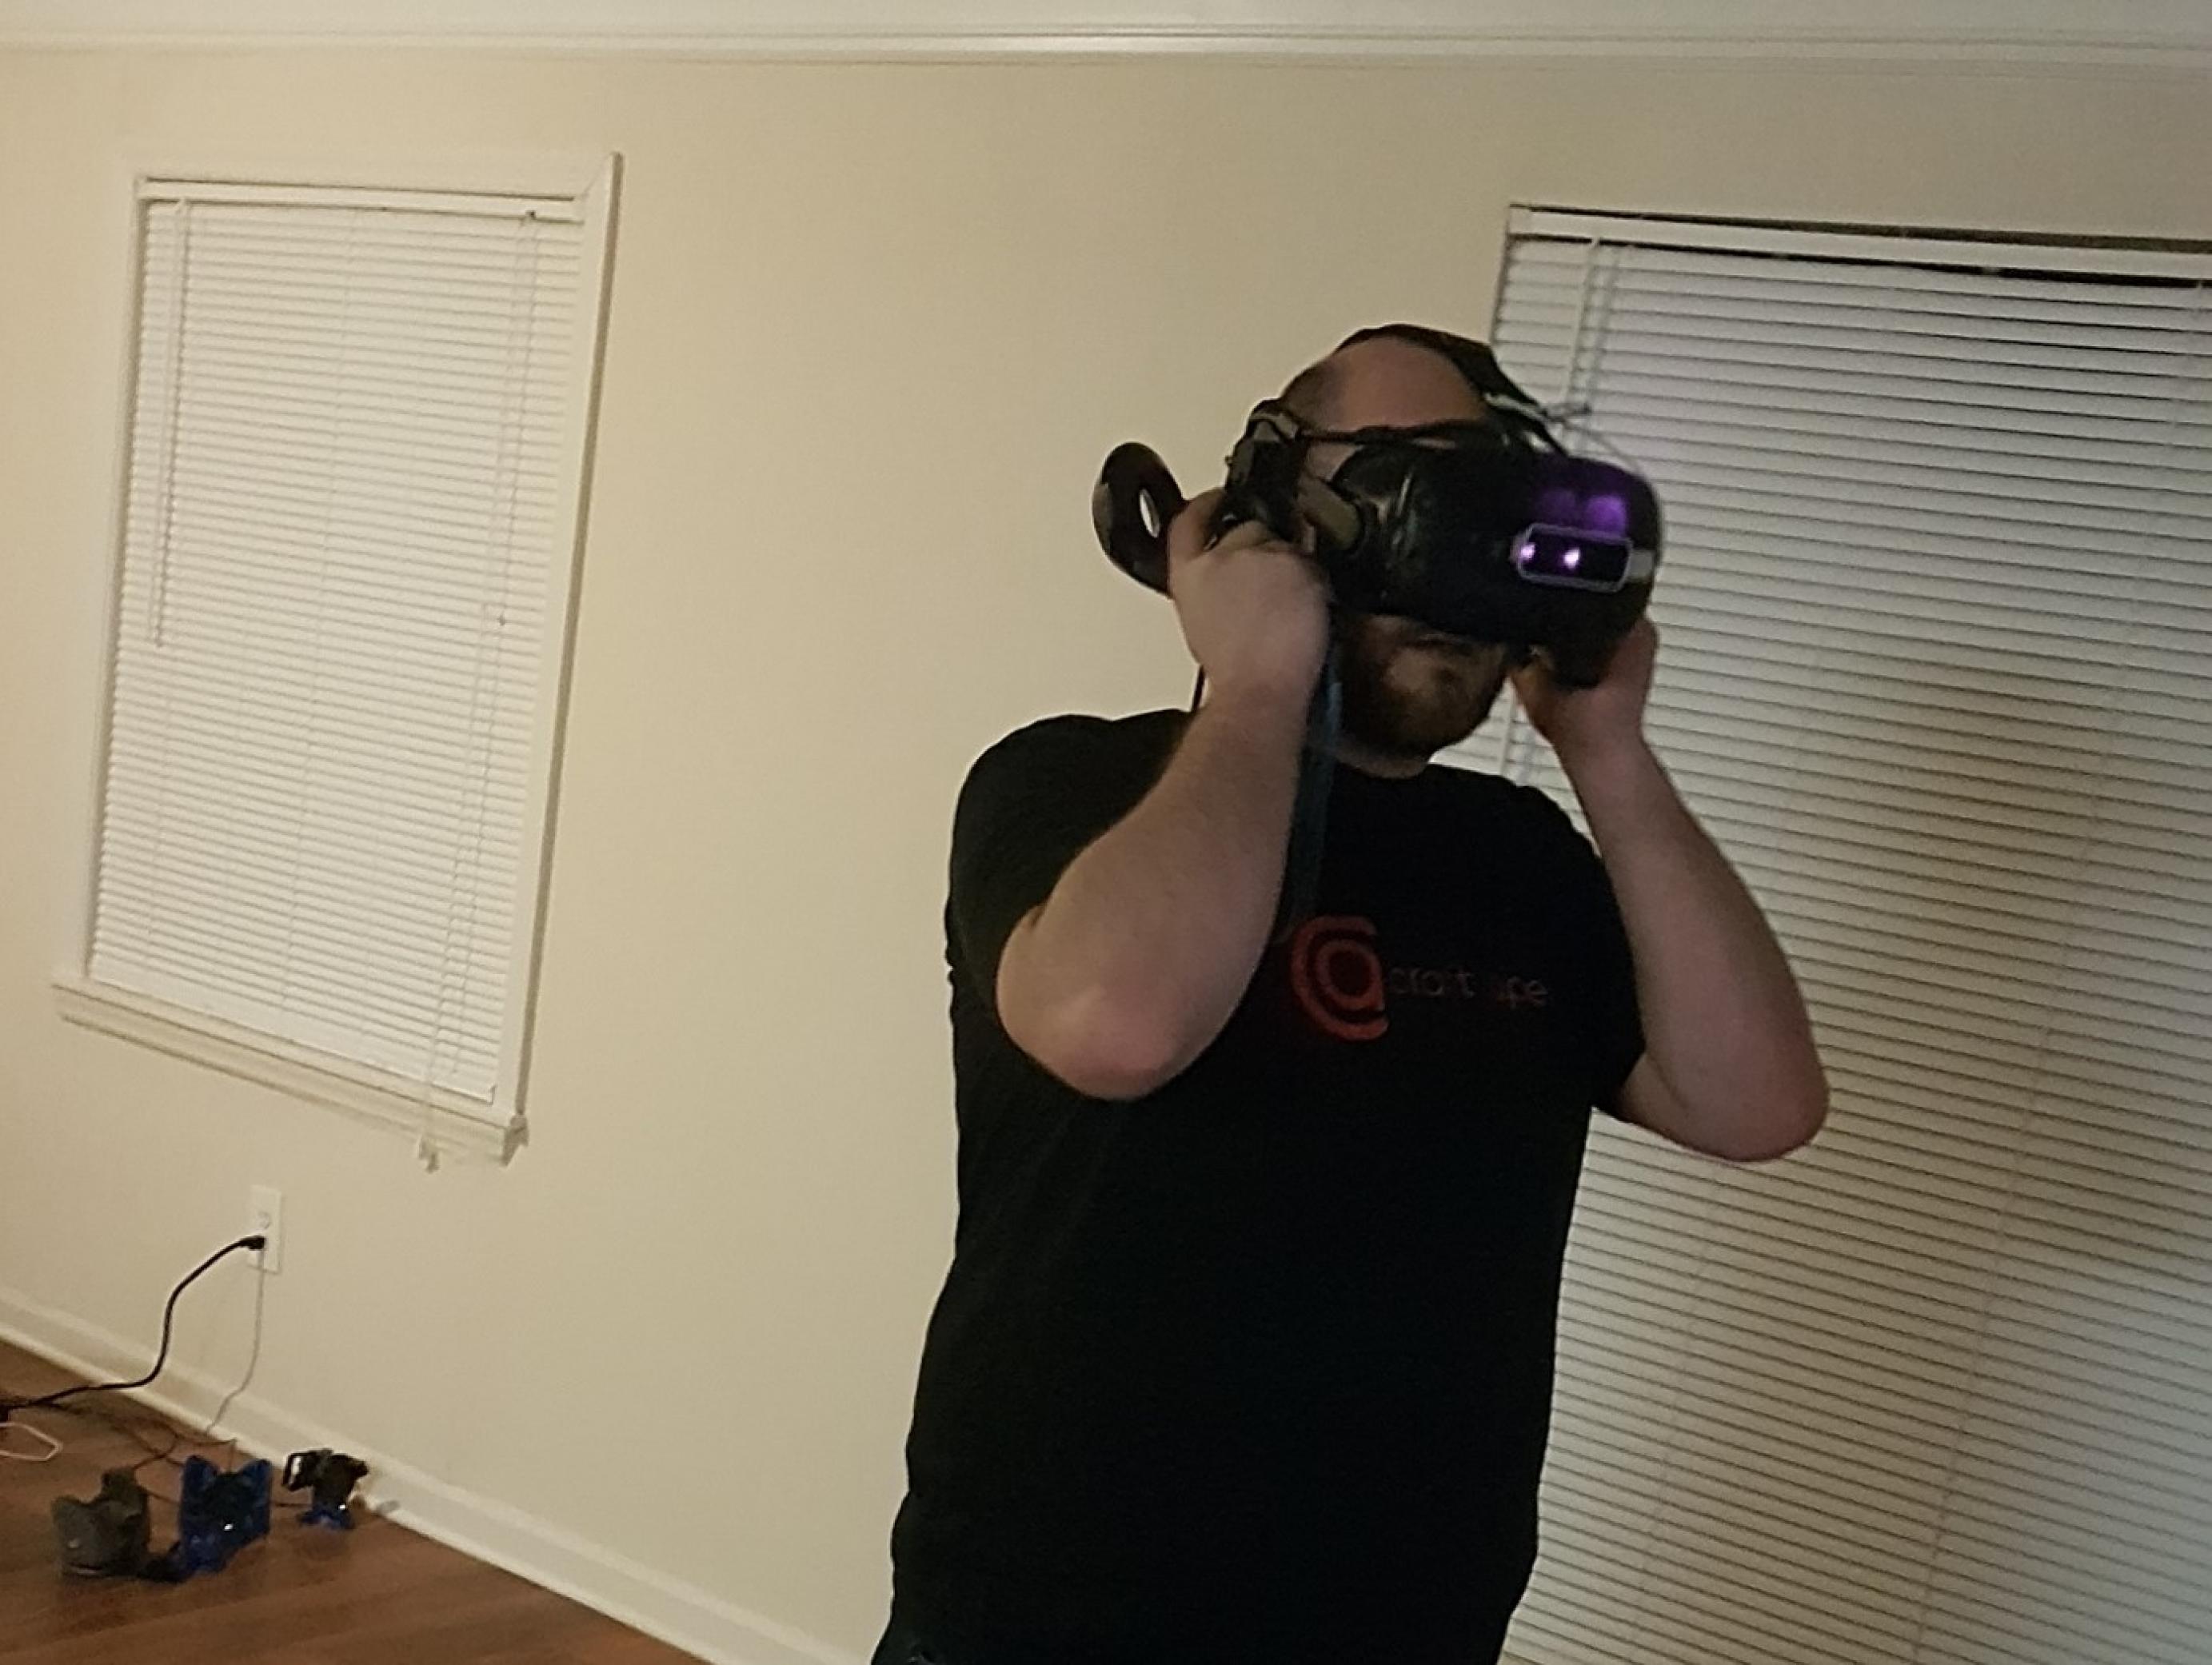 Ein junger Mann mit Vollbart und beginnender Glatze trägt eineine VR-Headset auf dem Kopf. Er steht in einem leeren, kahlen Raum. Die Jalousien vor den Fenstern sind geschlossen.